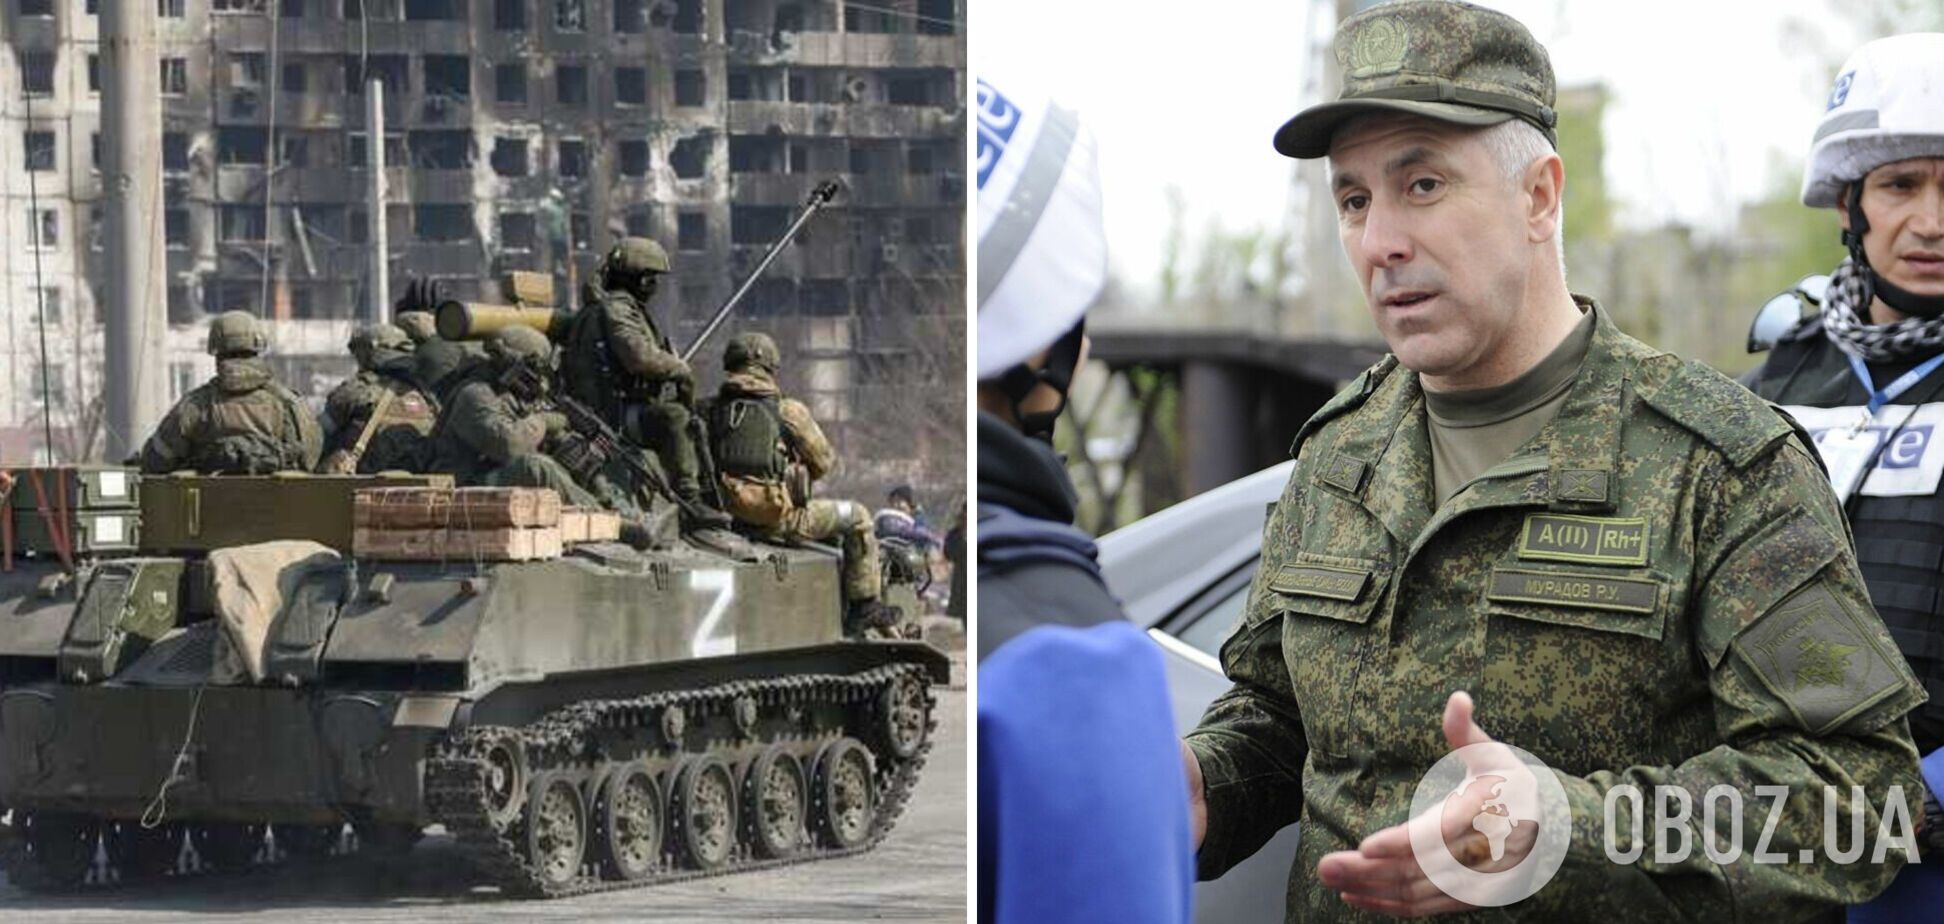 Оккупанты не хотят идти в бой против ВСУ: РФ отправила в Украину своего 'карателя'. Аудио